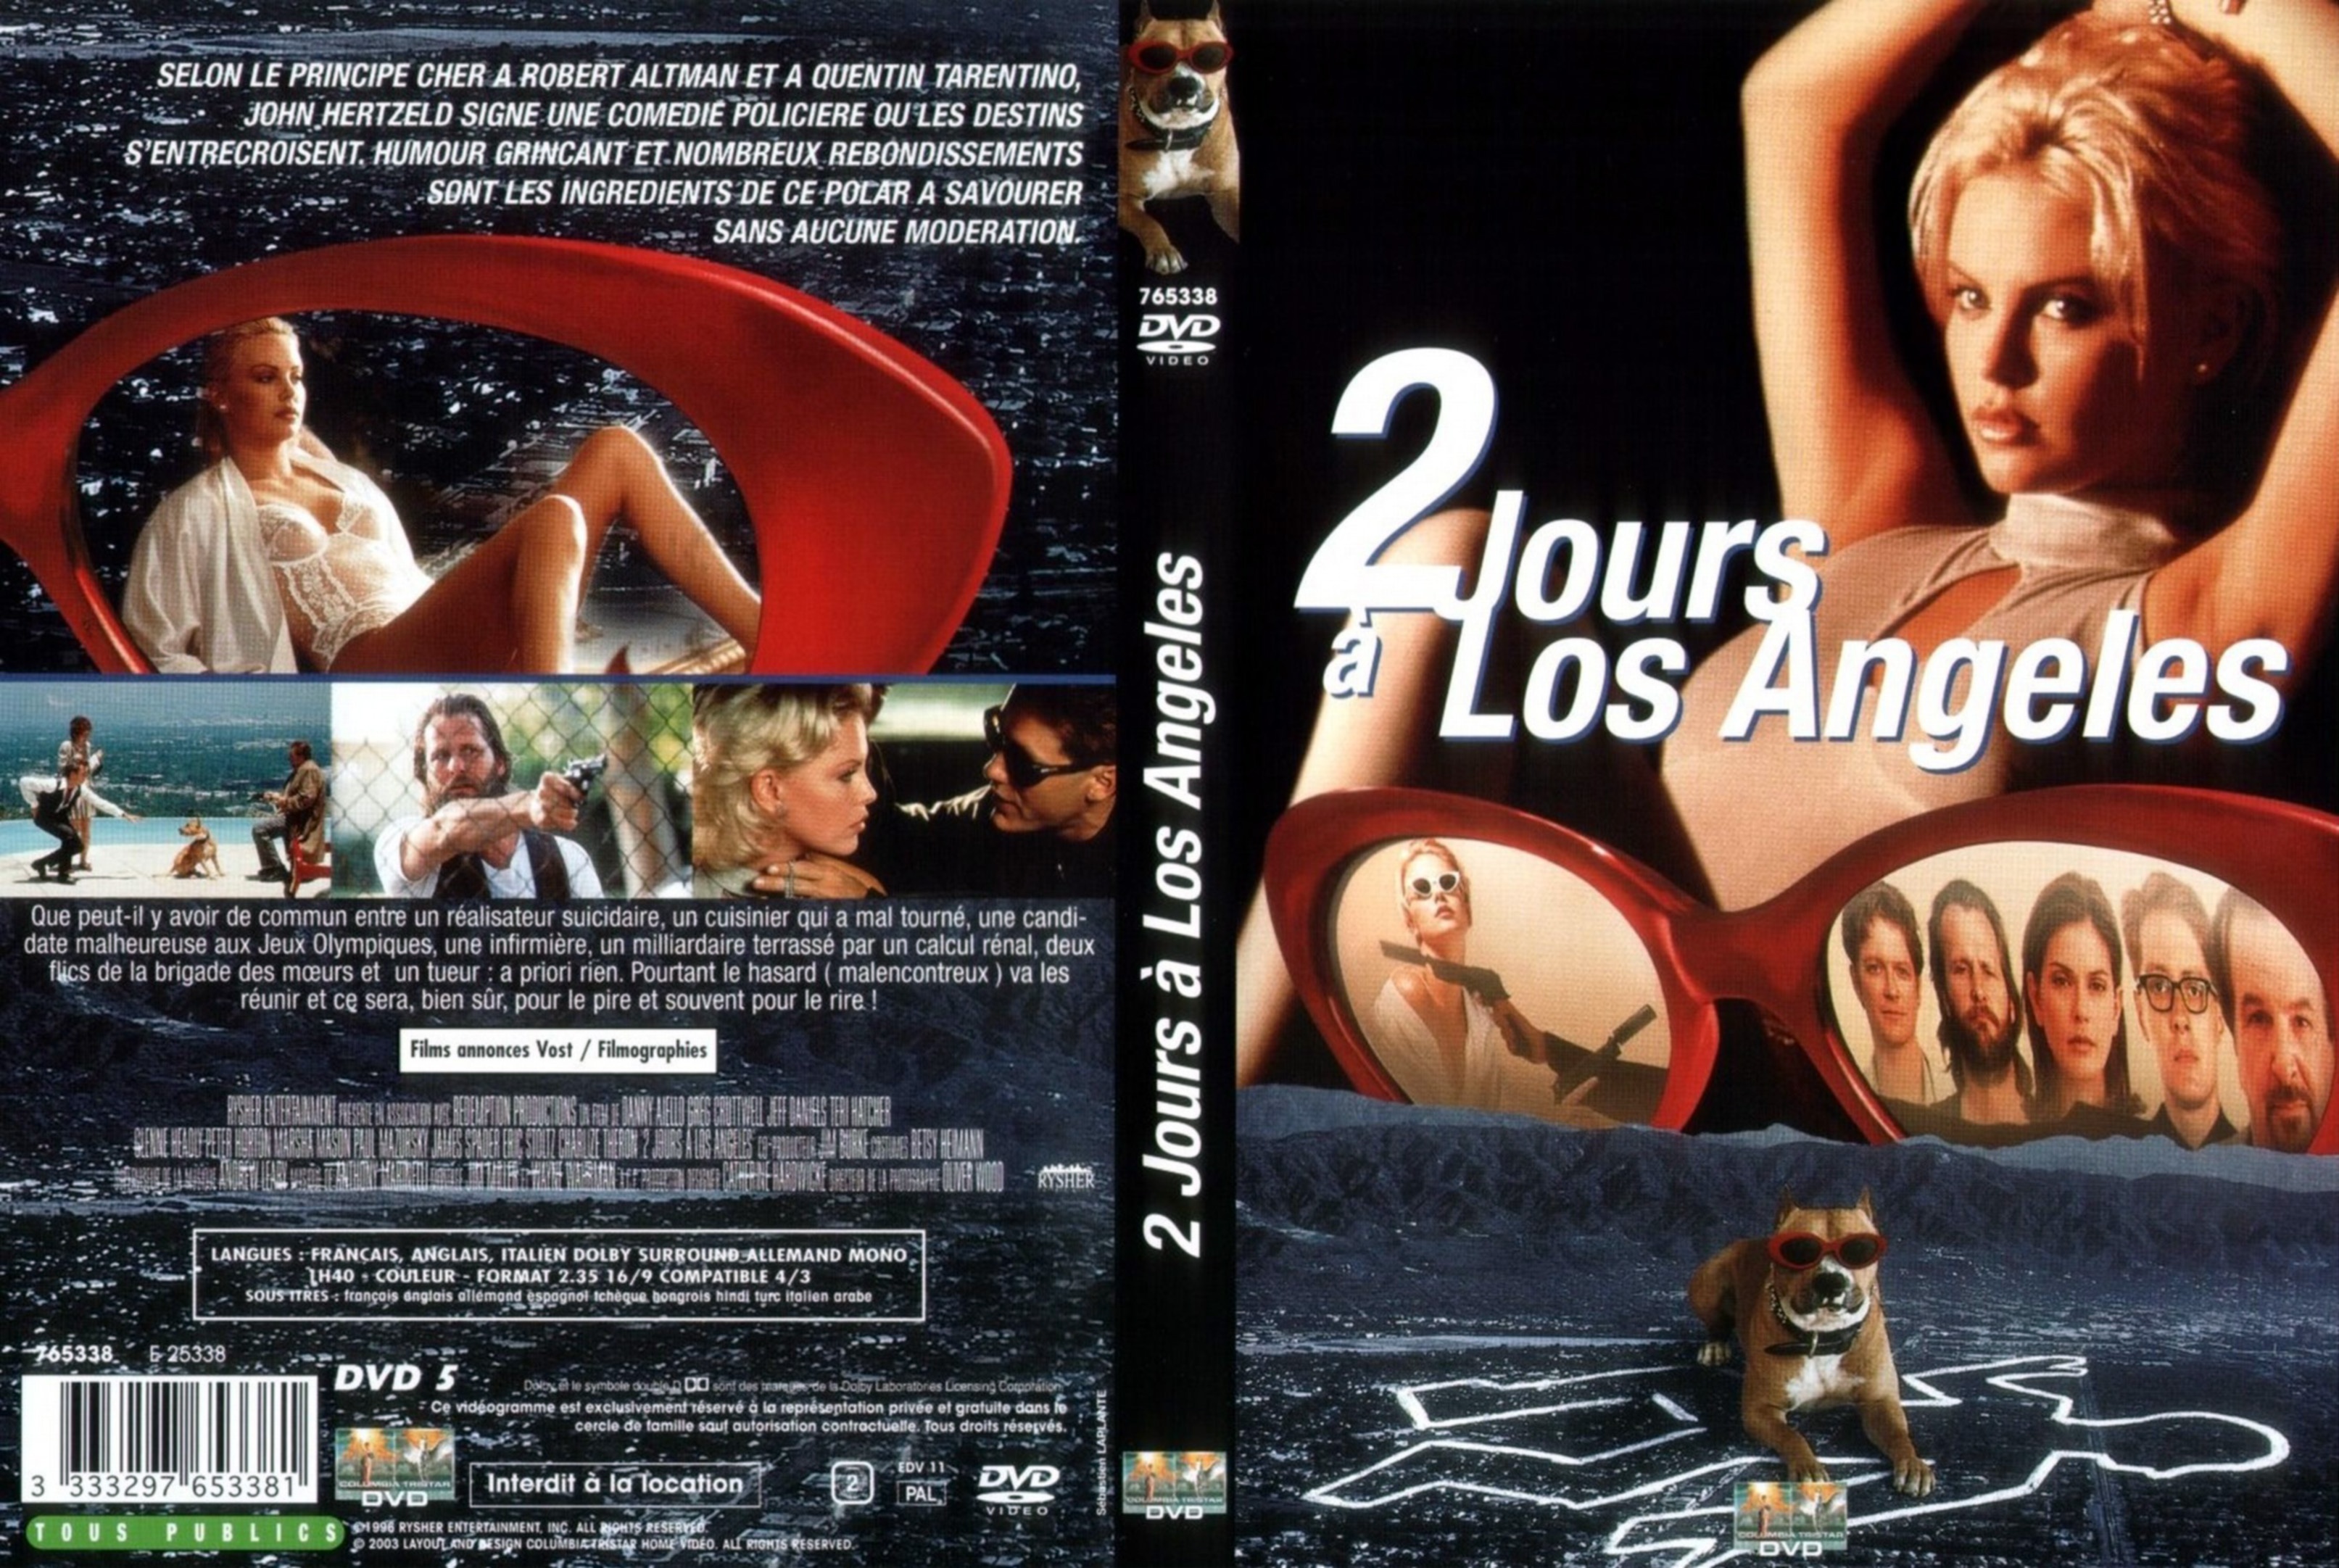 Jaquette DVD 2 jours  Los Angeles